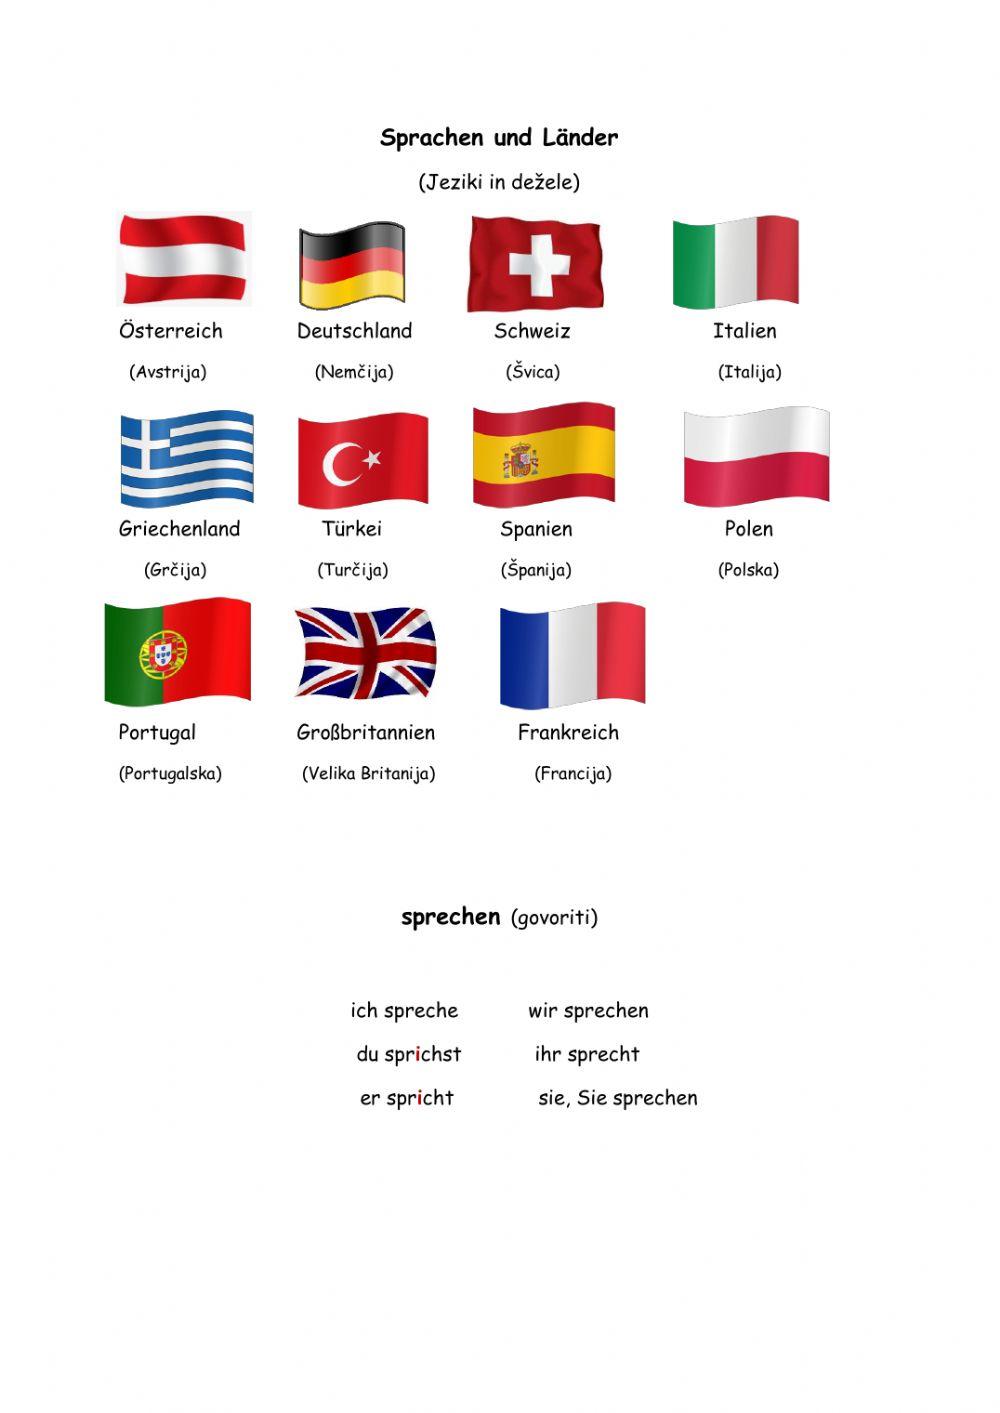 Sprachen und Länder